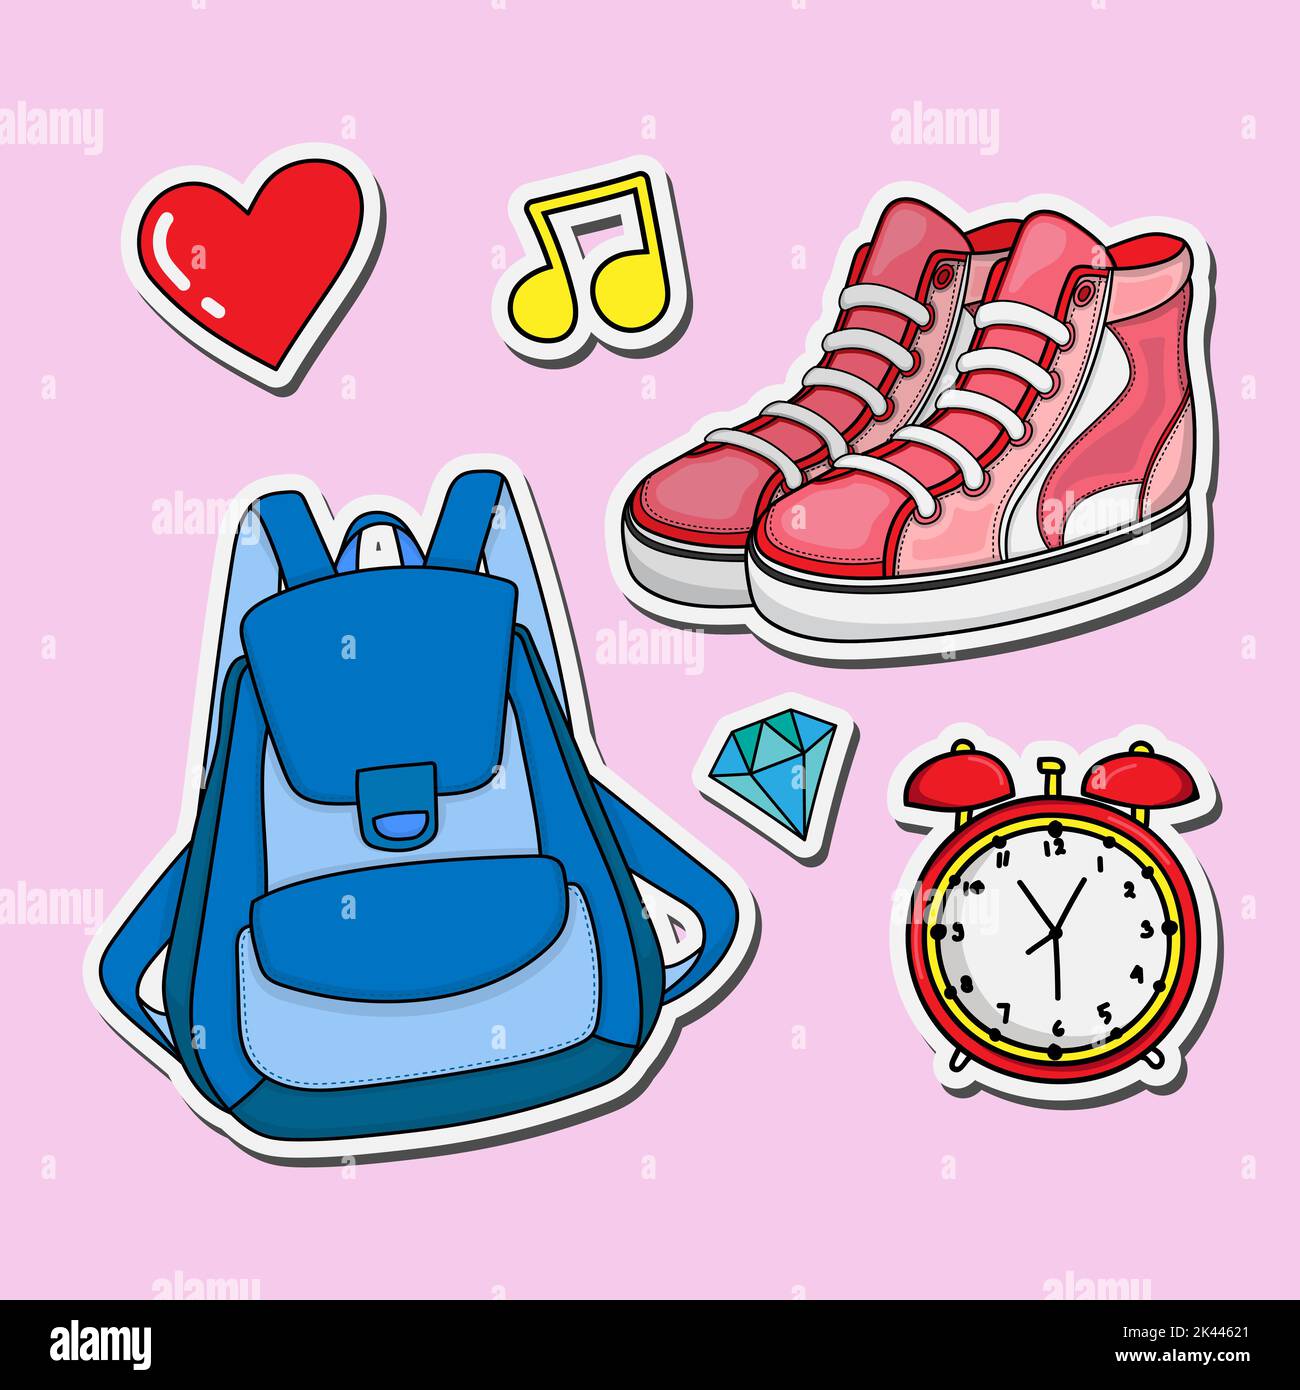 Illustration Design zurück in die Schule mit Doodle Stil Taschen und Schuhe für gepatchte Abzeichen Aufkleber und Schlüsselanhänger Set Stock Vektor